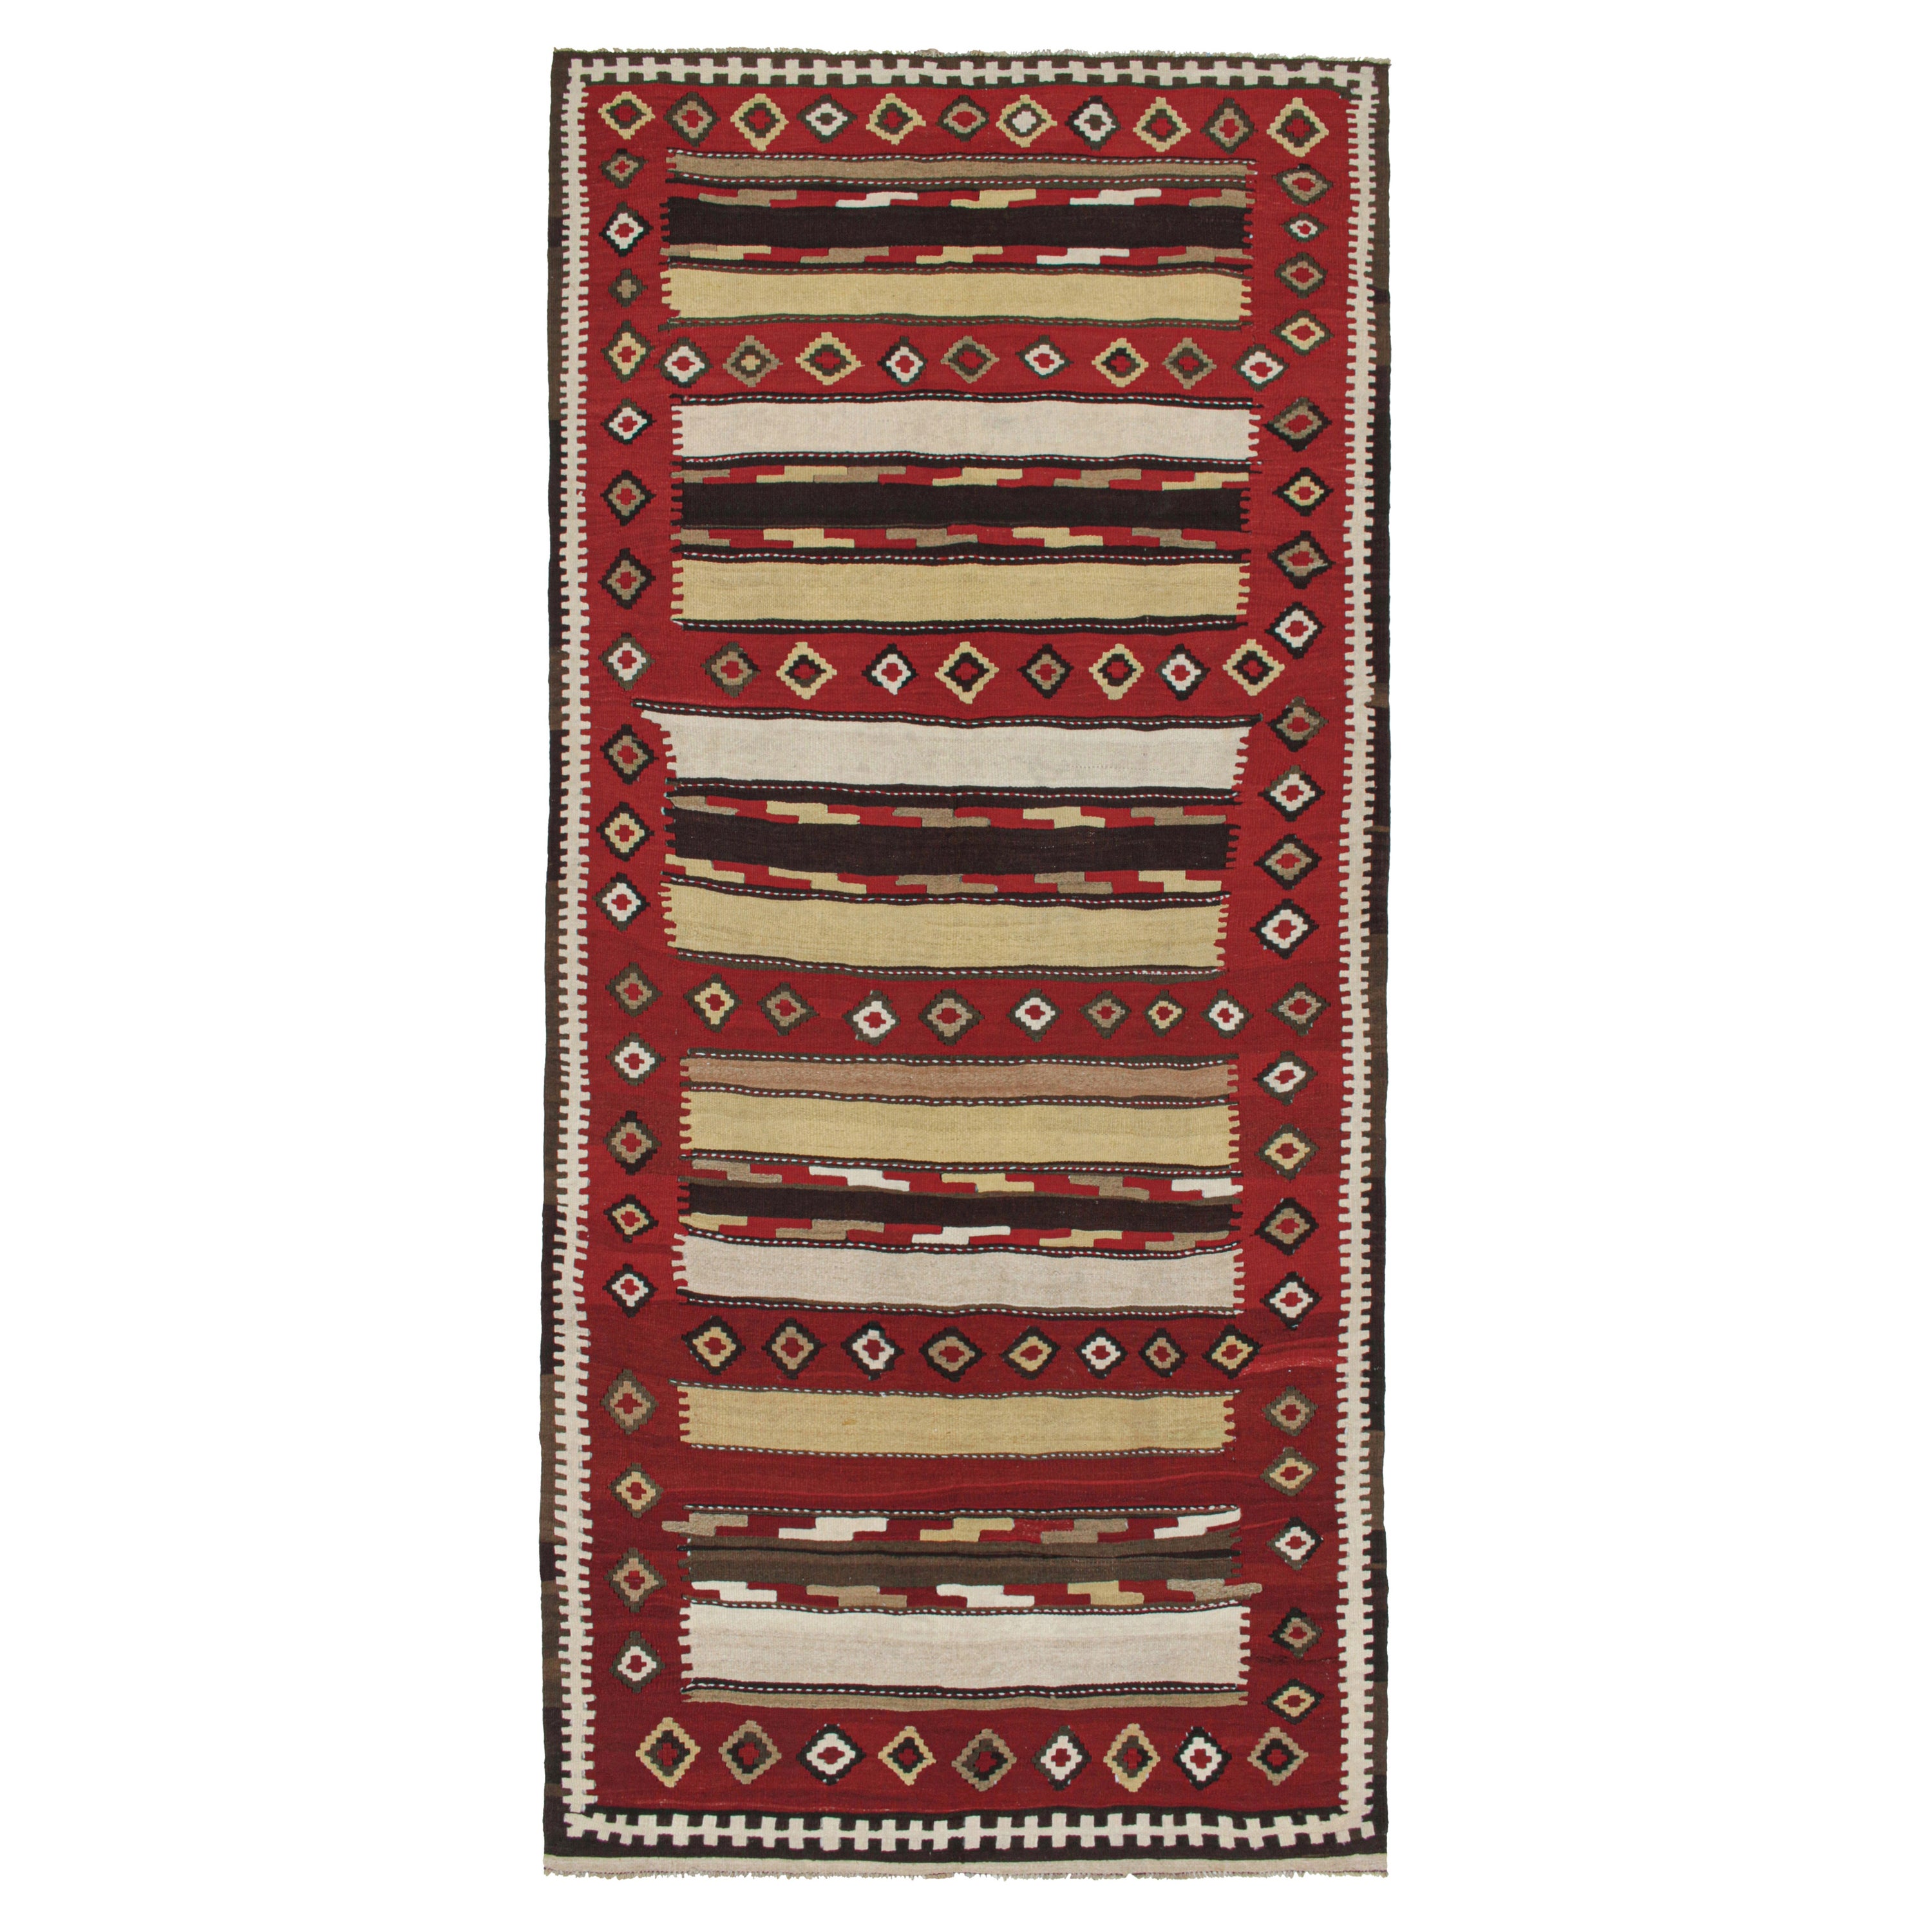 Vintage Shahsavan Persian Kilim in Red, Brown, White & Black